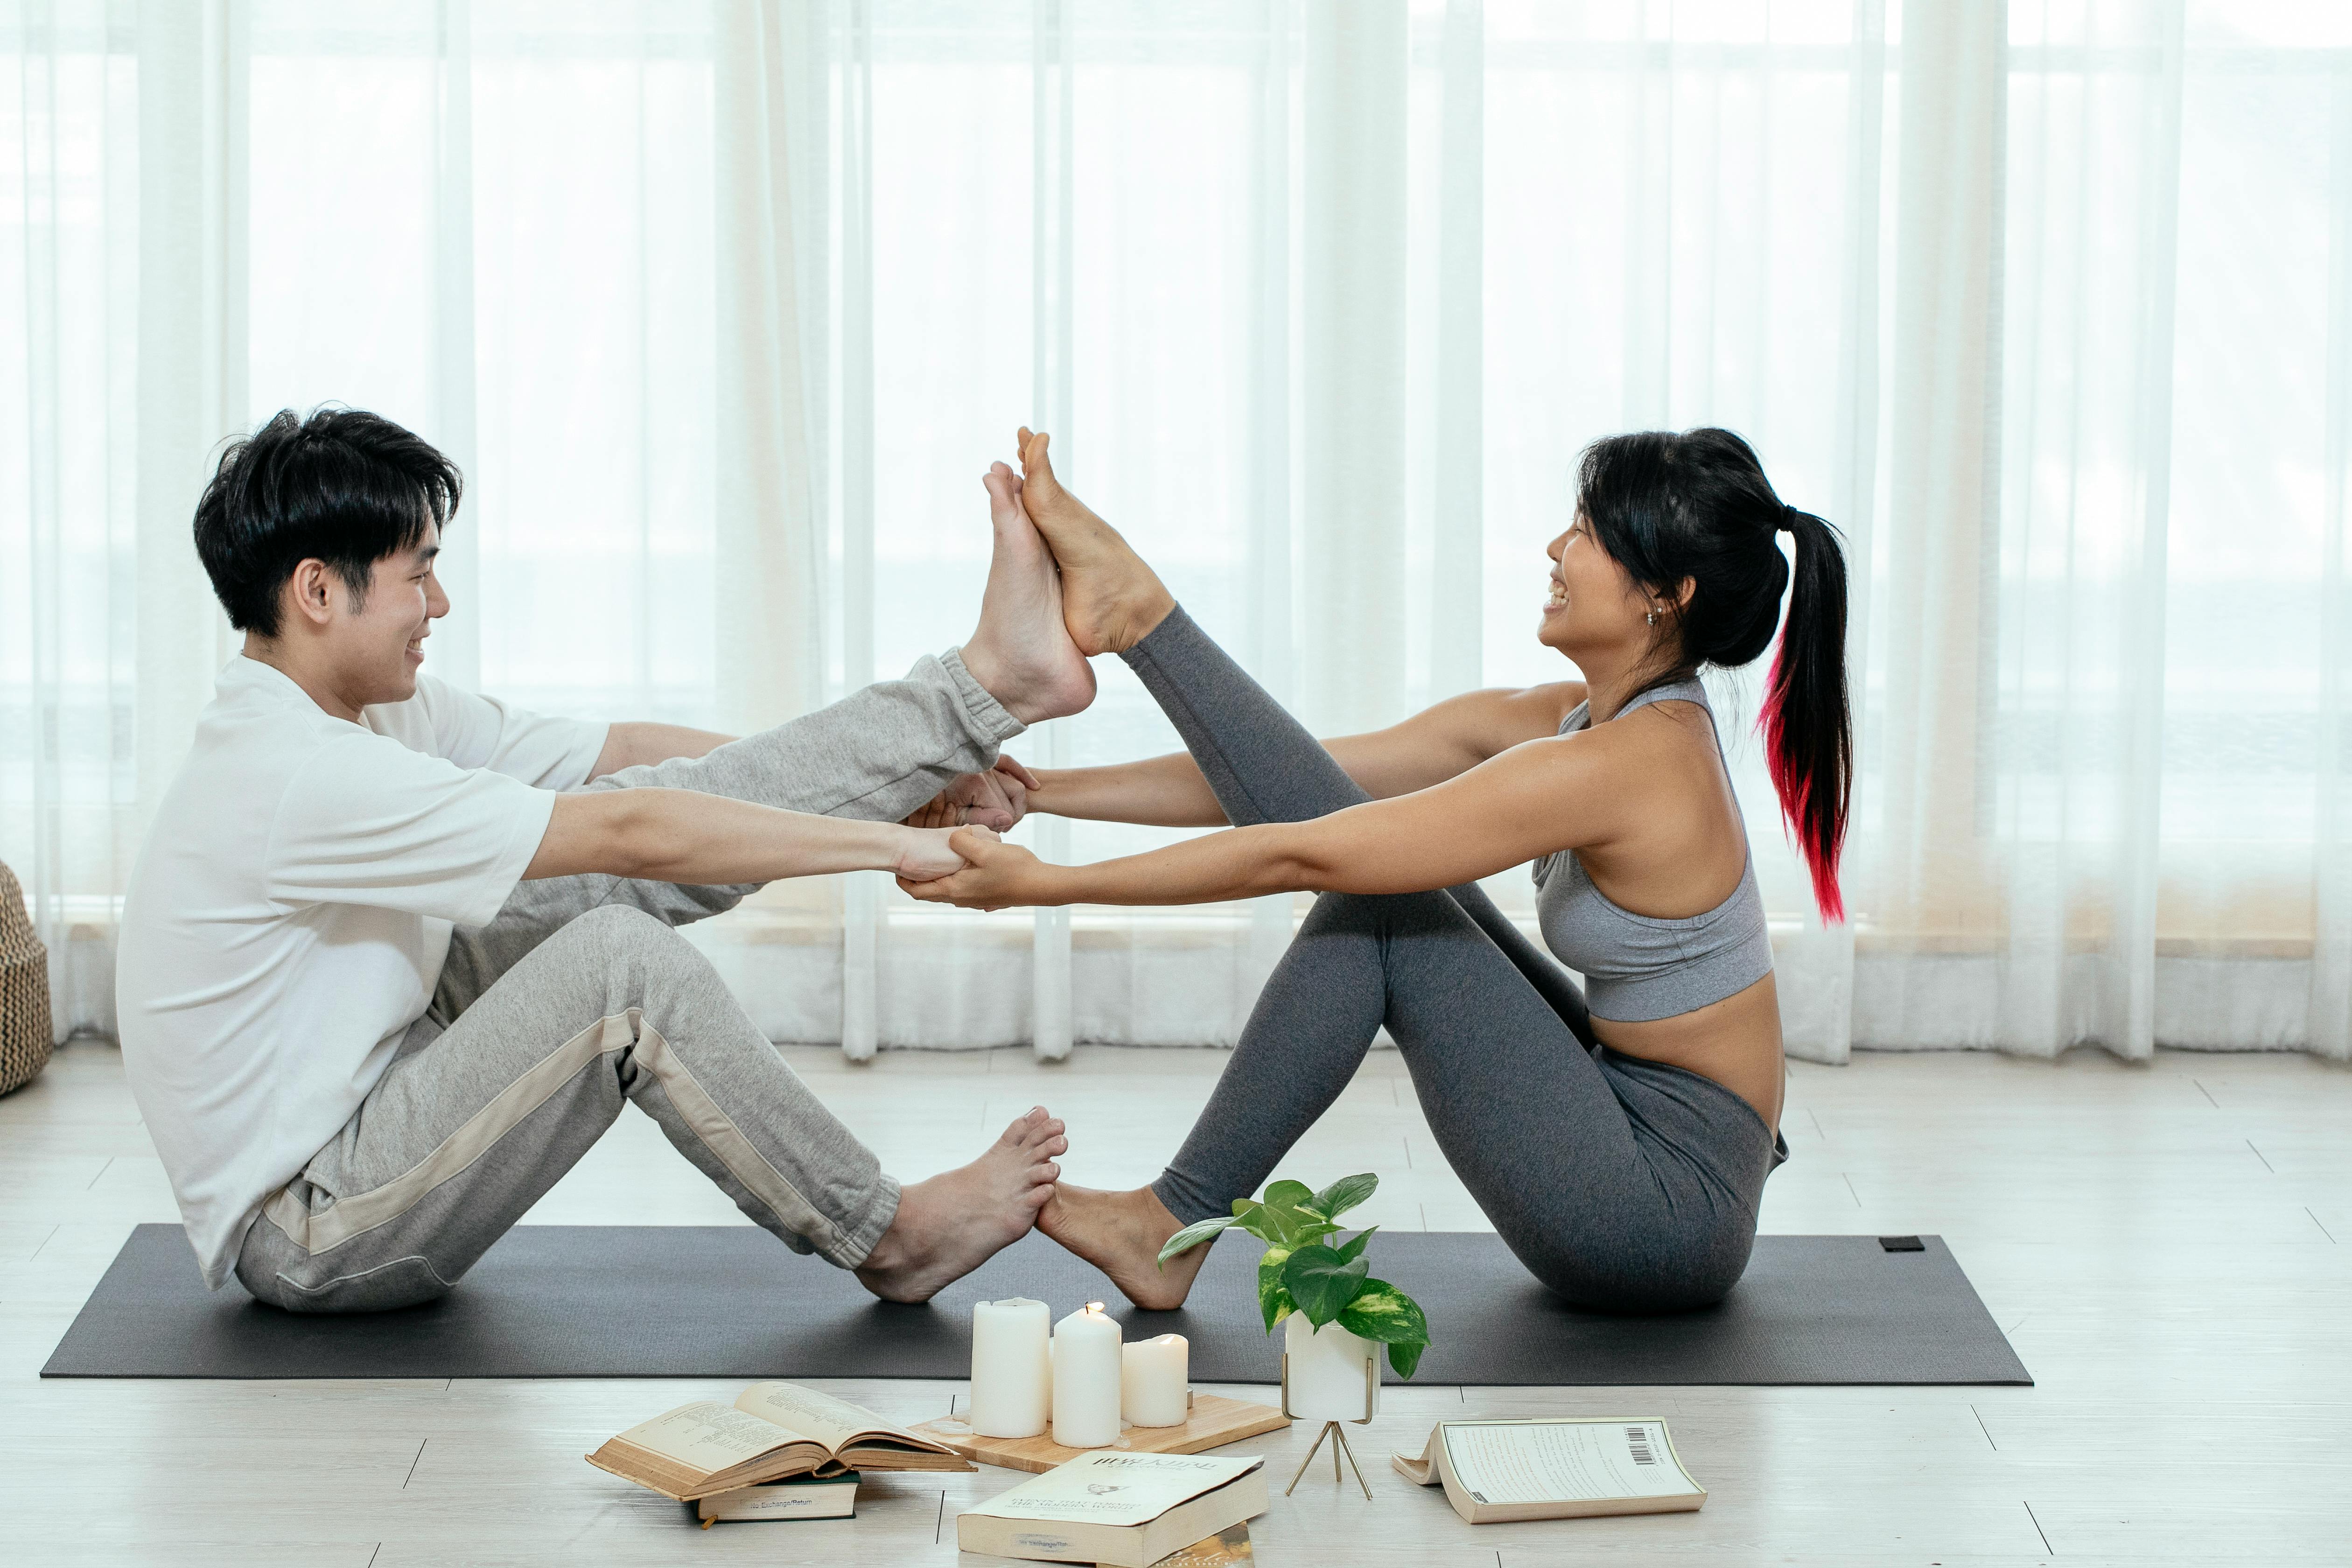 Partner Yoga: Tips, Benefits and Best Poses • Yoga Basics